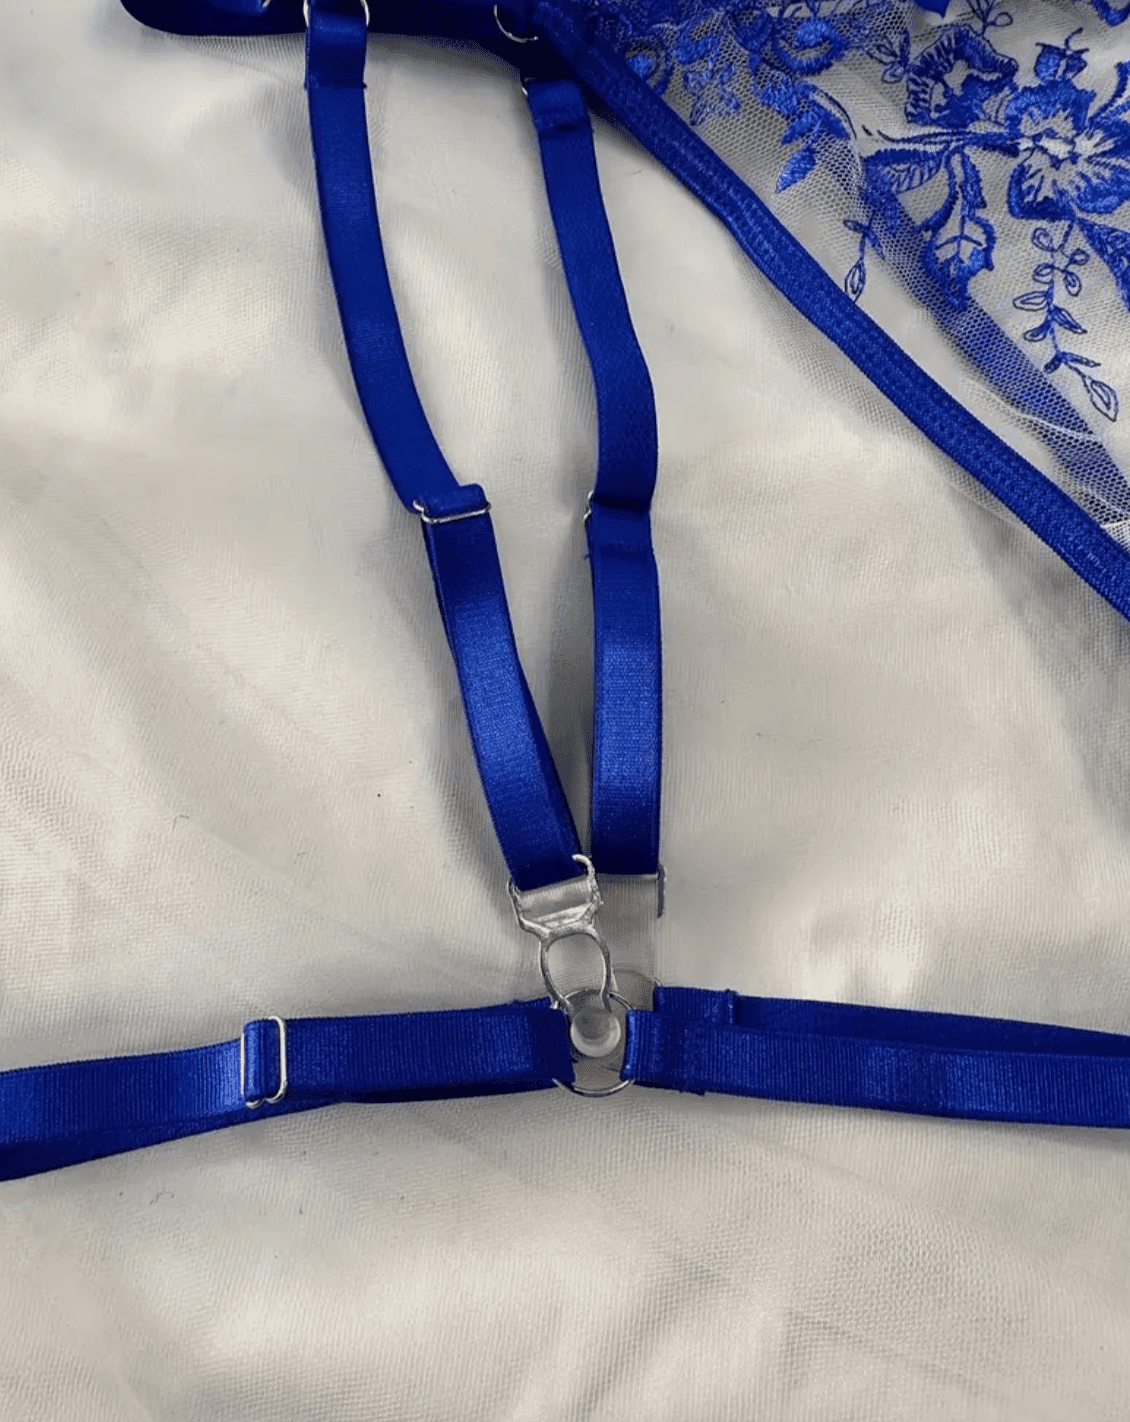 garter strap adjustable